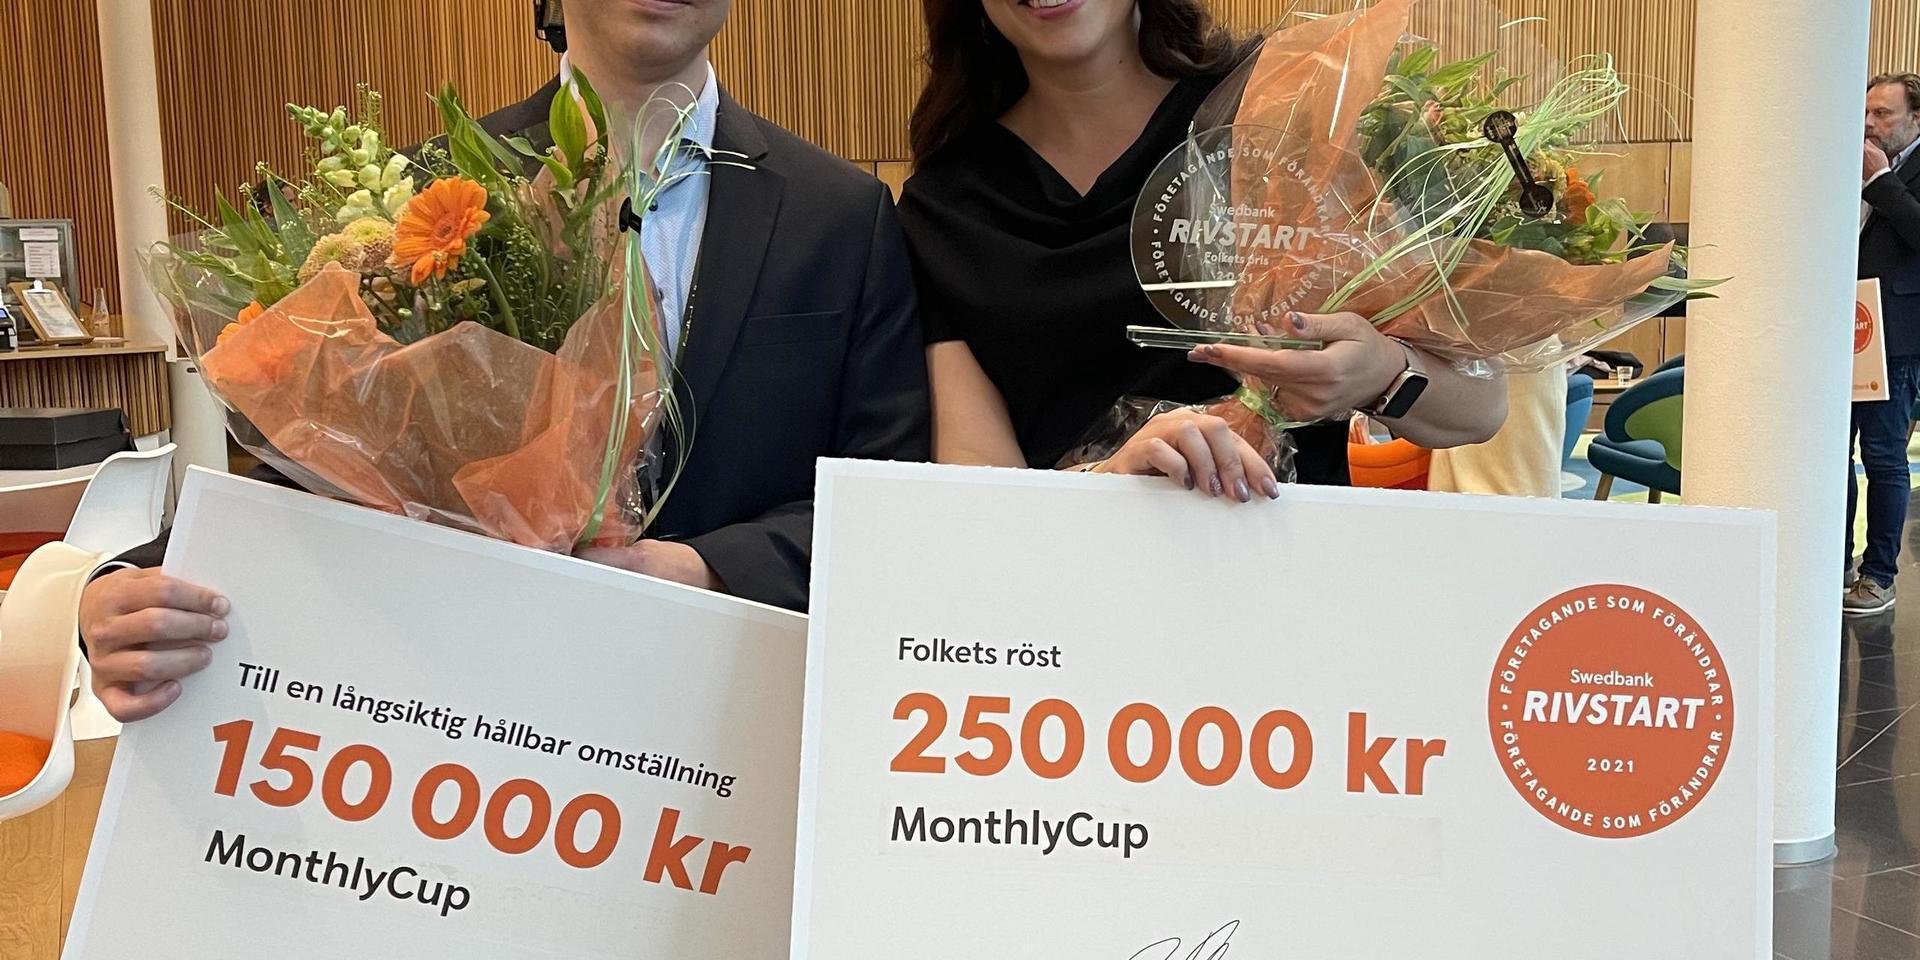 Monthlycup, som drivs av Martin och Lisa Perby, vann folkets röst i entreprenörstävlingen Swedbank rivstart. Finalen ägde rum i Stockholm under onsdagen. 